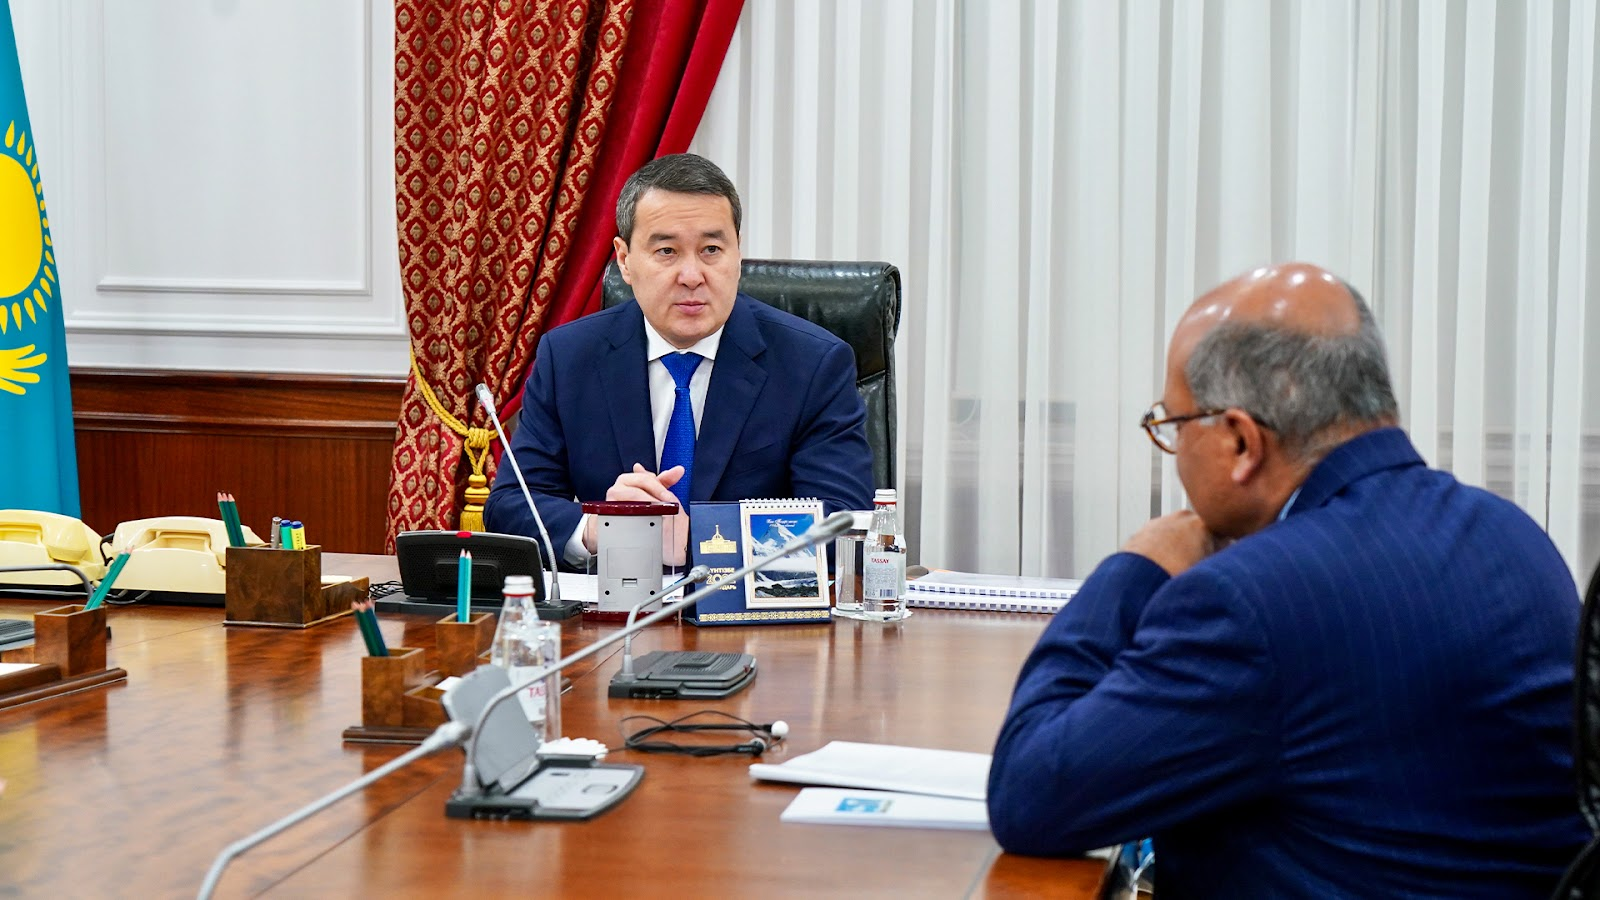 Премьер-министр Казахстана и заместитель председателя Совета по реформам сэр Сума Чакрабарти обсудили экономические перспективы на 2023 год - Bizmedia.kz